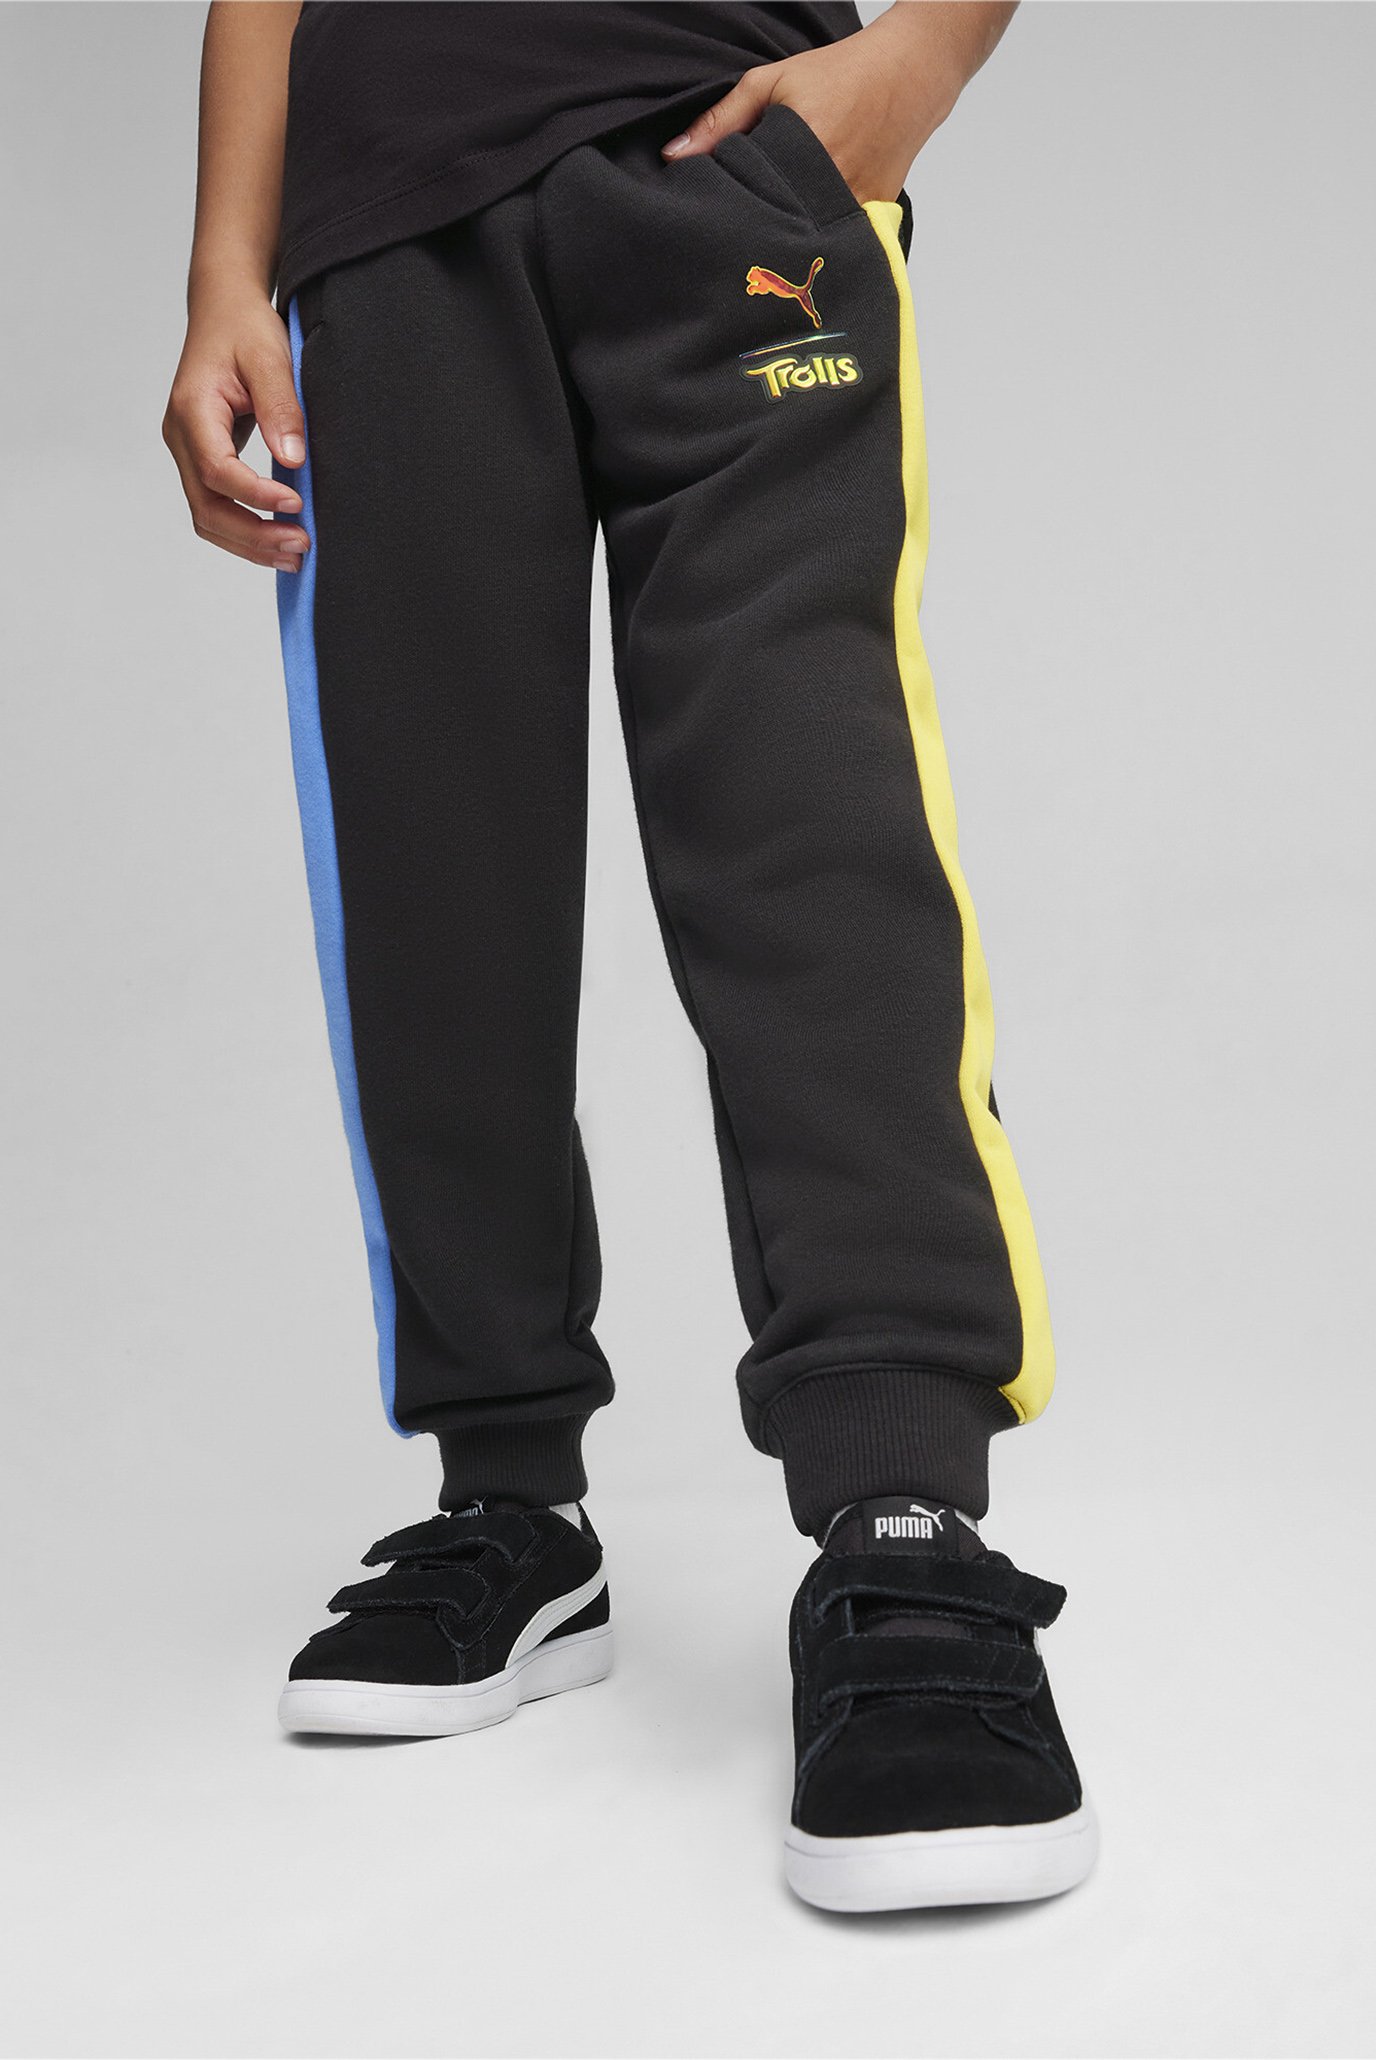 Детские черные спортивные брюки PUMA x TROLLS Kids' T7 Track Pants 1